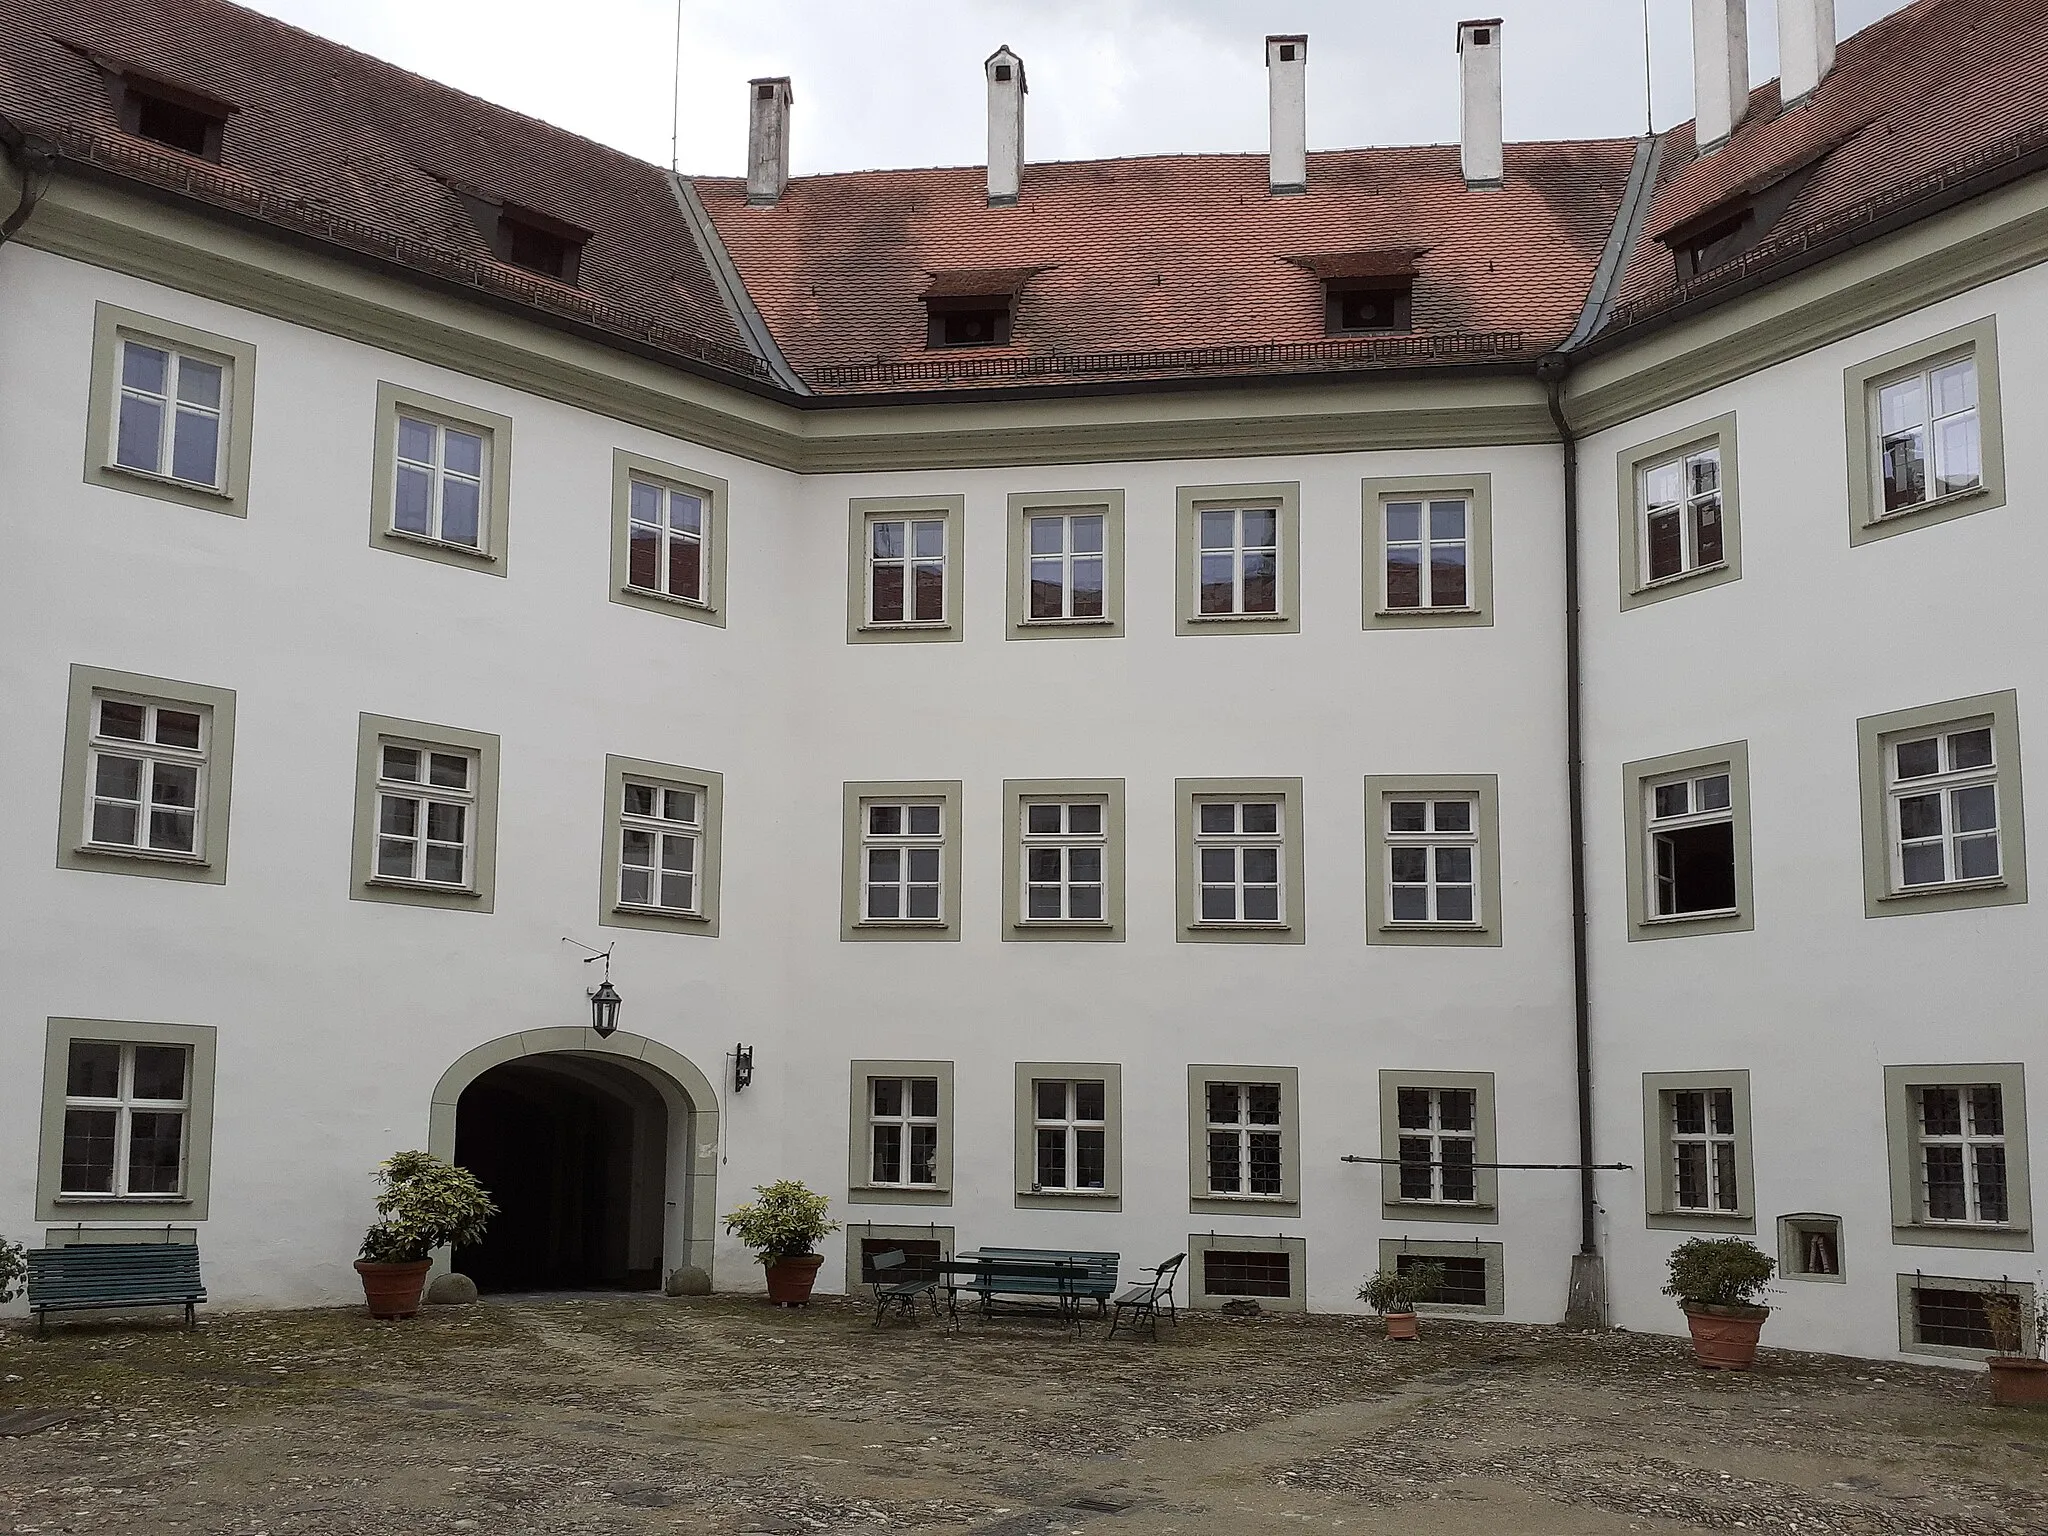 Photo showing: Das Schloss Sünching ist eine dreigeschossige, fast regelmäßige oktogonale Wasserburg mit mittelalterlichem Kern um einen unregelmäßigen oktogonalen Innenhof. Die Fassade gegliedert von Eckpilastern, geohrten Rahmungen und Portalen. 
Bei dem Schloss handelt es sich um eines der herausragenden Landschlösser Süddeutschlands. Es ist ein Gesamtkunstwerk des höfischen Rokoko in Bayern, zu dem Cuvilliés berühmte Meister heranzog.